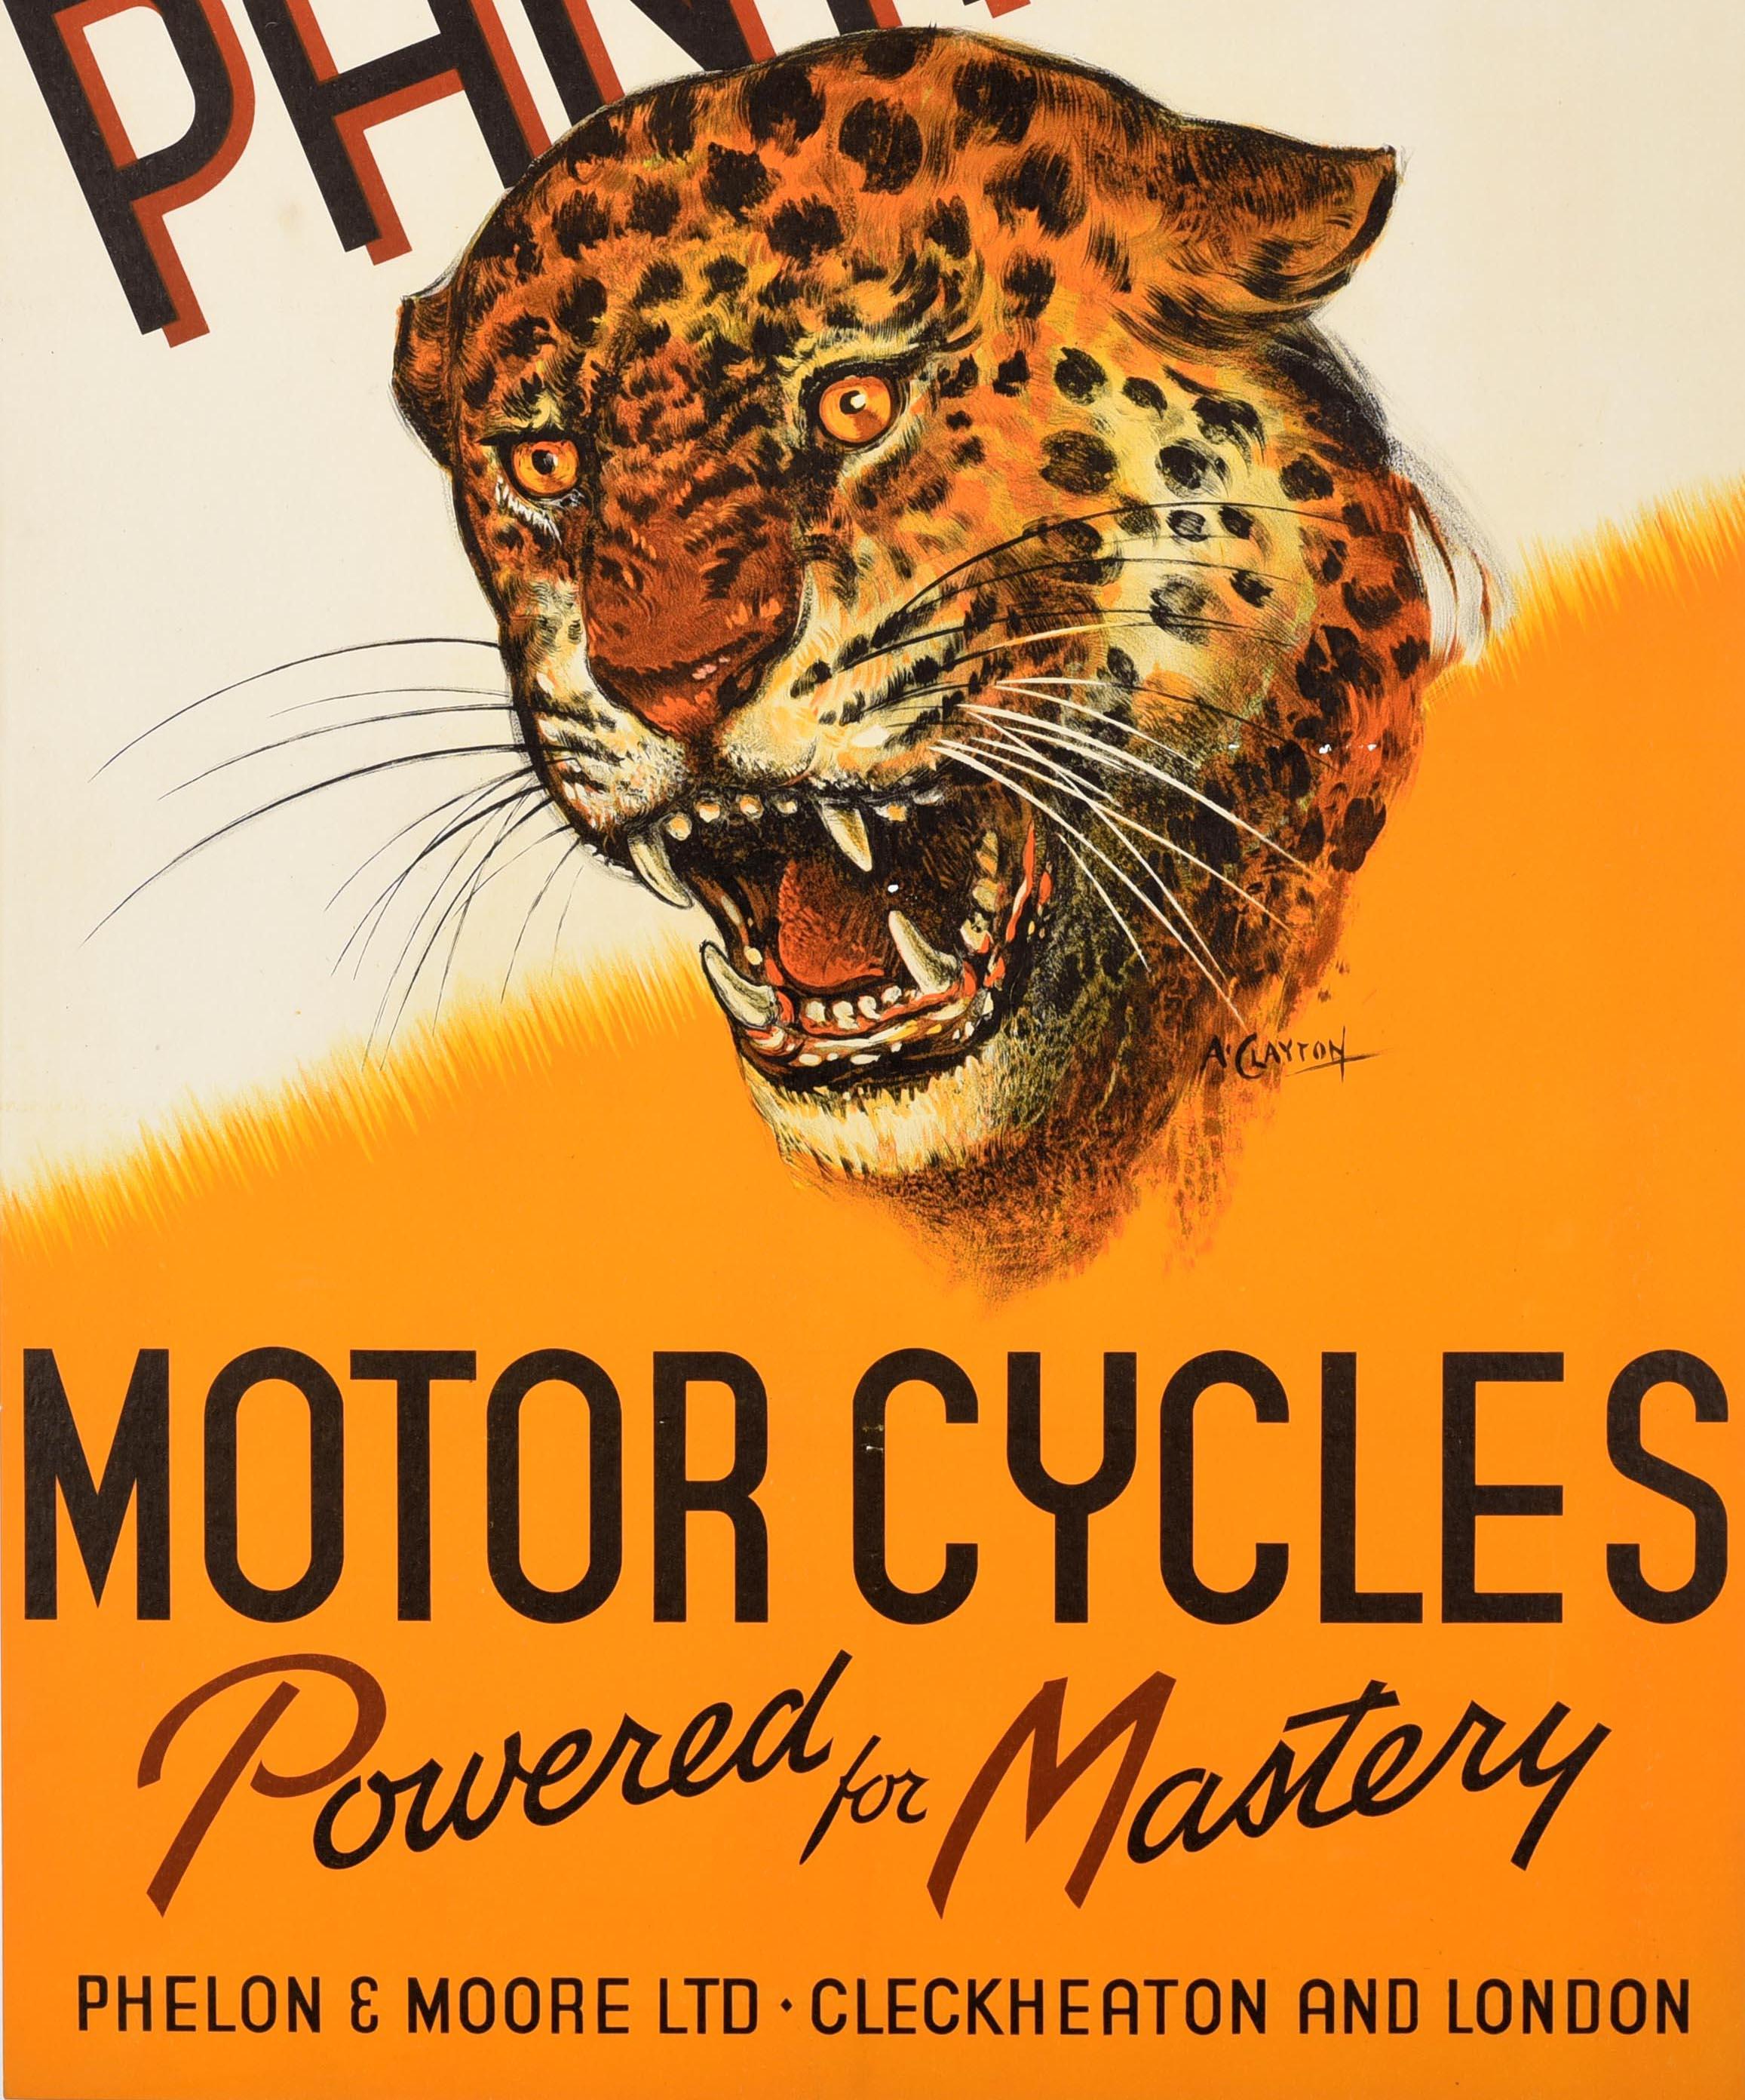 Original Vintage-Werbeplakat für Panther Motor Cycles Powered for Mastery Phelon & Moore Ltd Cleckheaton und London. Großartiges Bild eines zähnefletschenden Jaguars vor einem dynamischen gelben und weißen Hintergrund, der Titel in fetten schwarzen